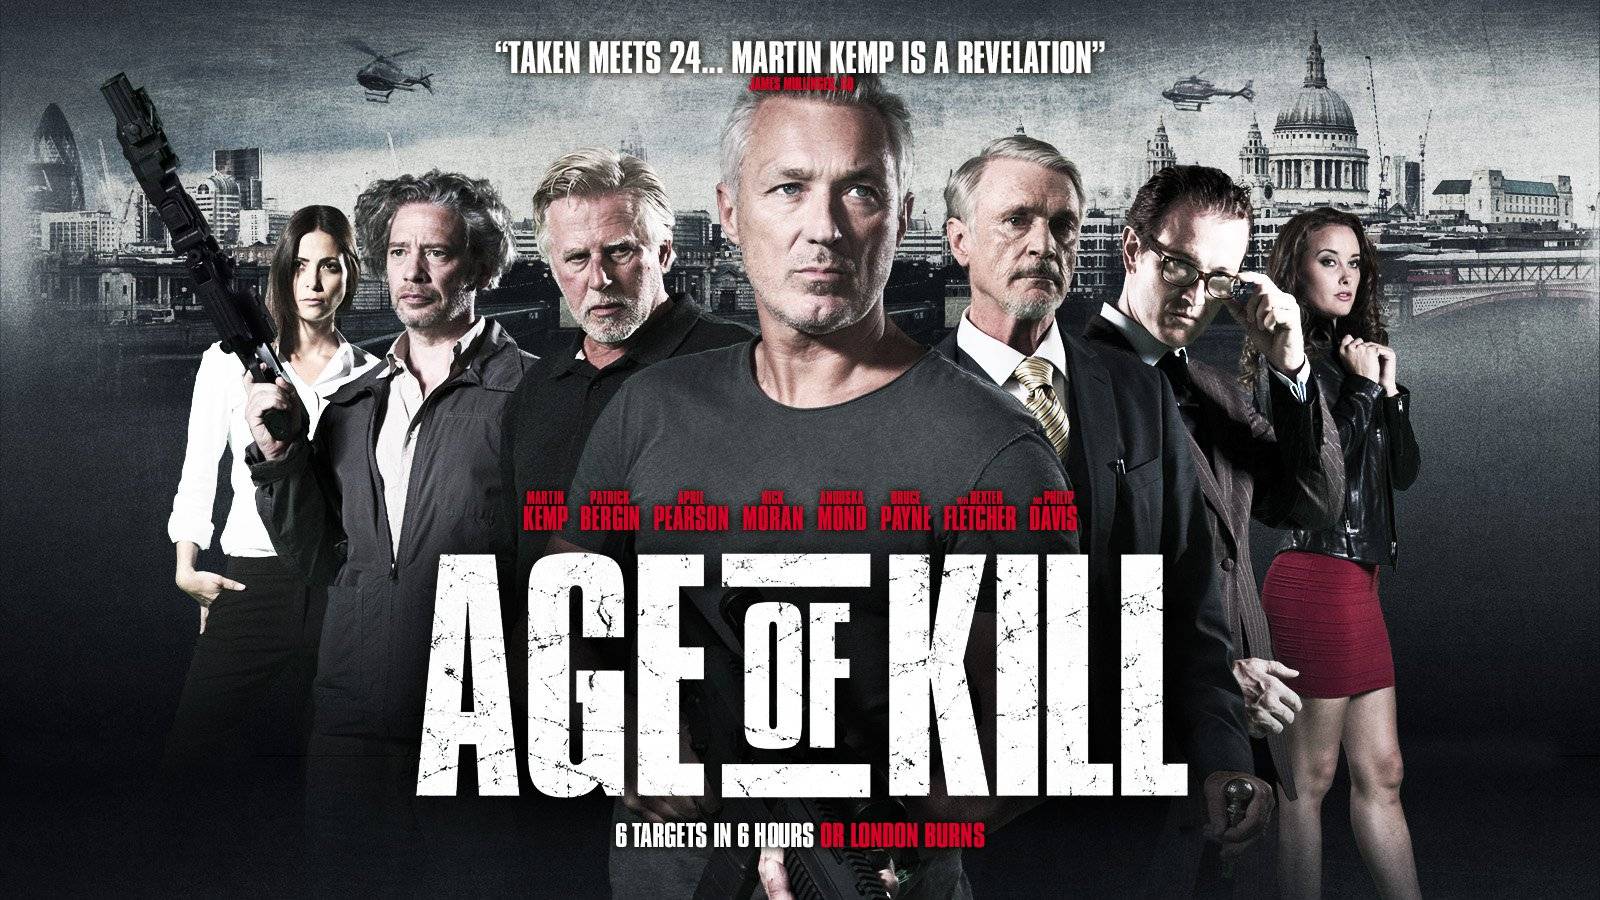 Age Of Kill (2015)